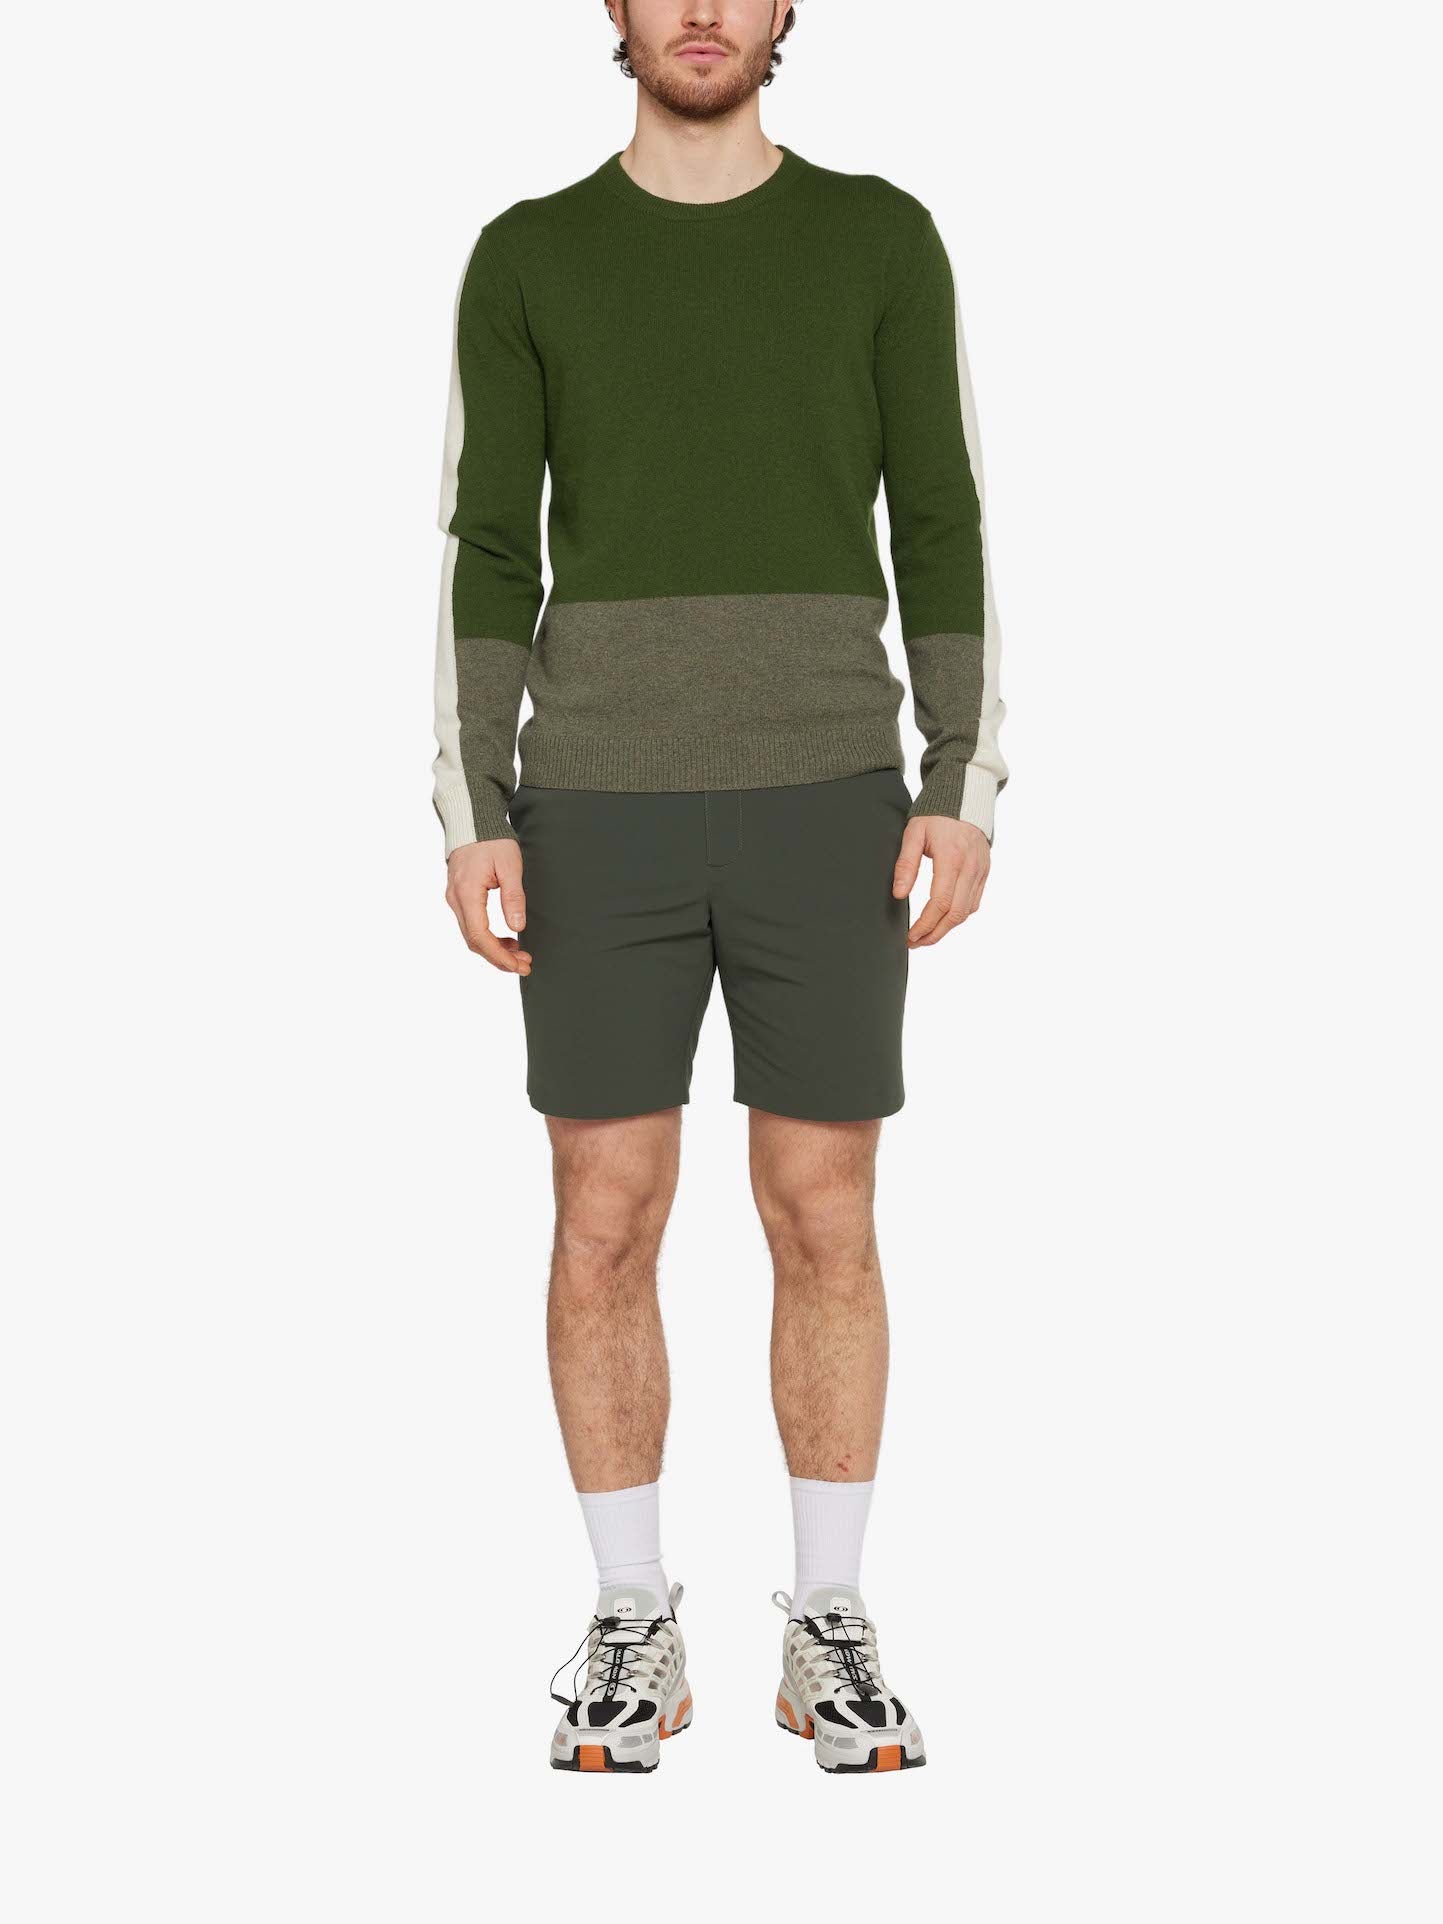 Morild Sweater Men Olive Green